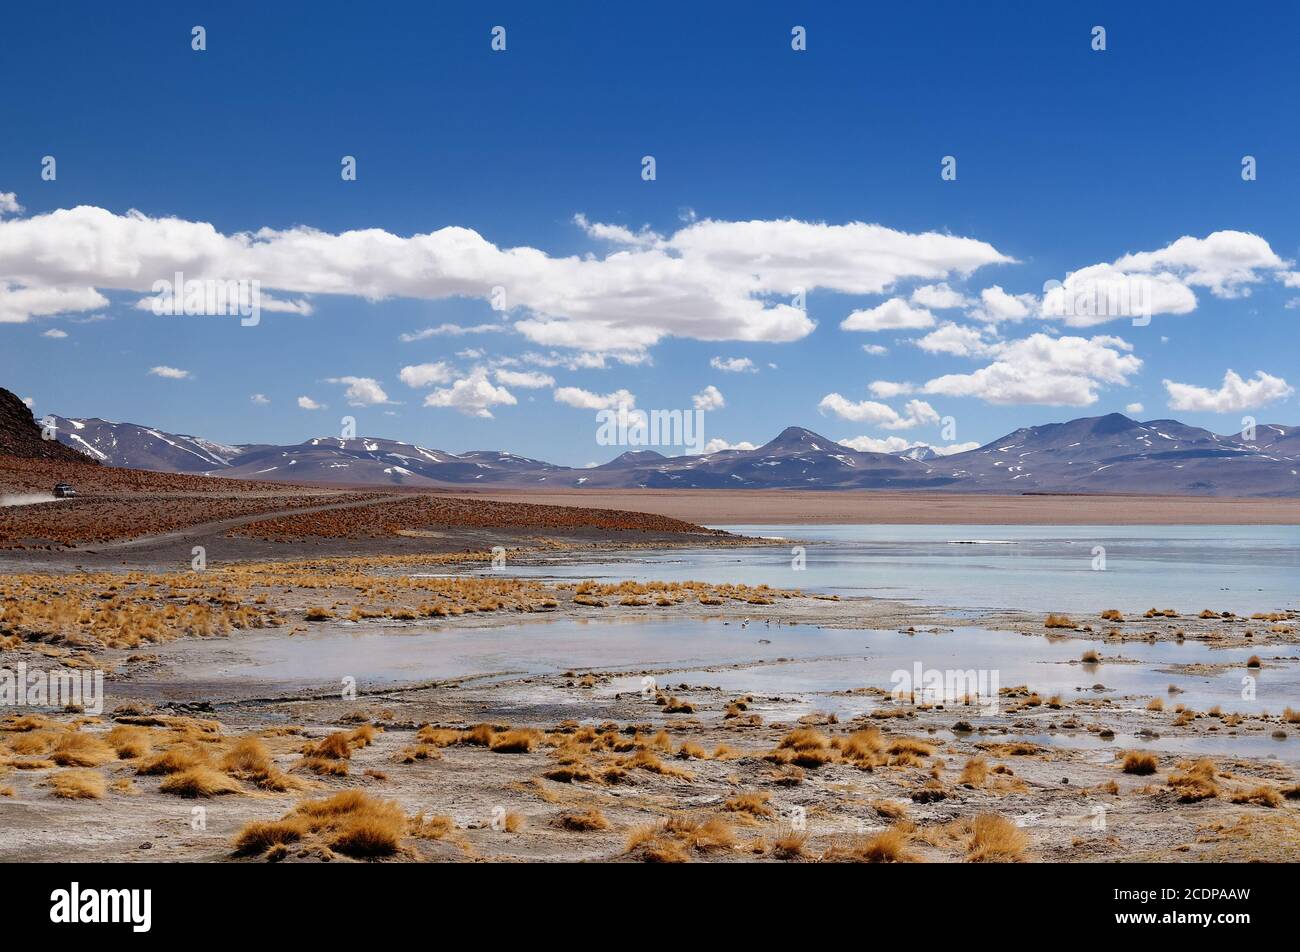 América del Sur - Bolivia. El paisaje surrealista es casi desarbolado, salpicada por colinas y volcanes, cerca de la frontera con Chile. La imagen presente h Foto de stock